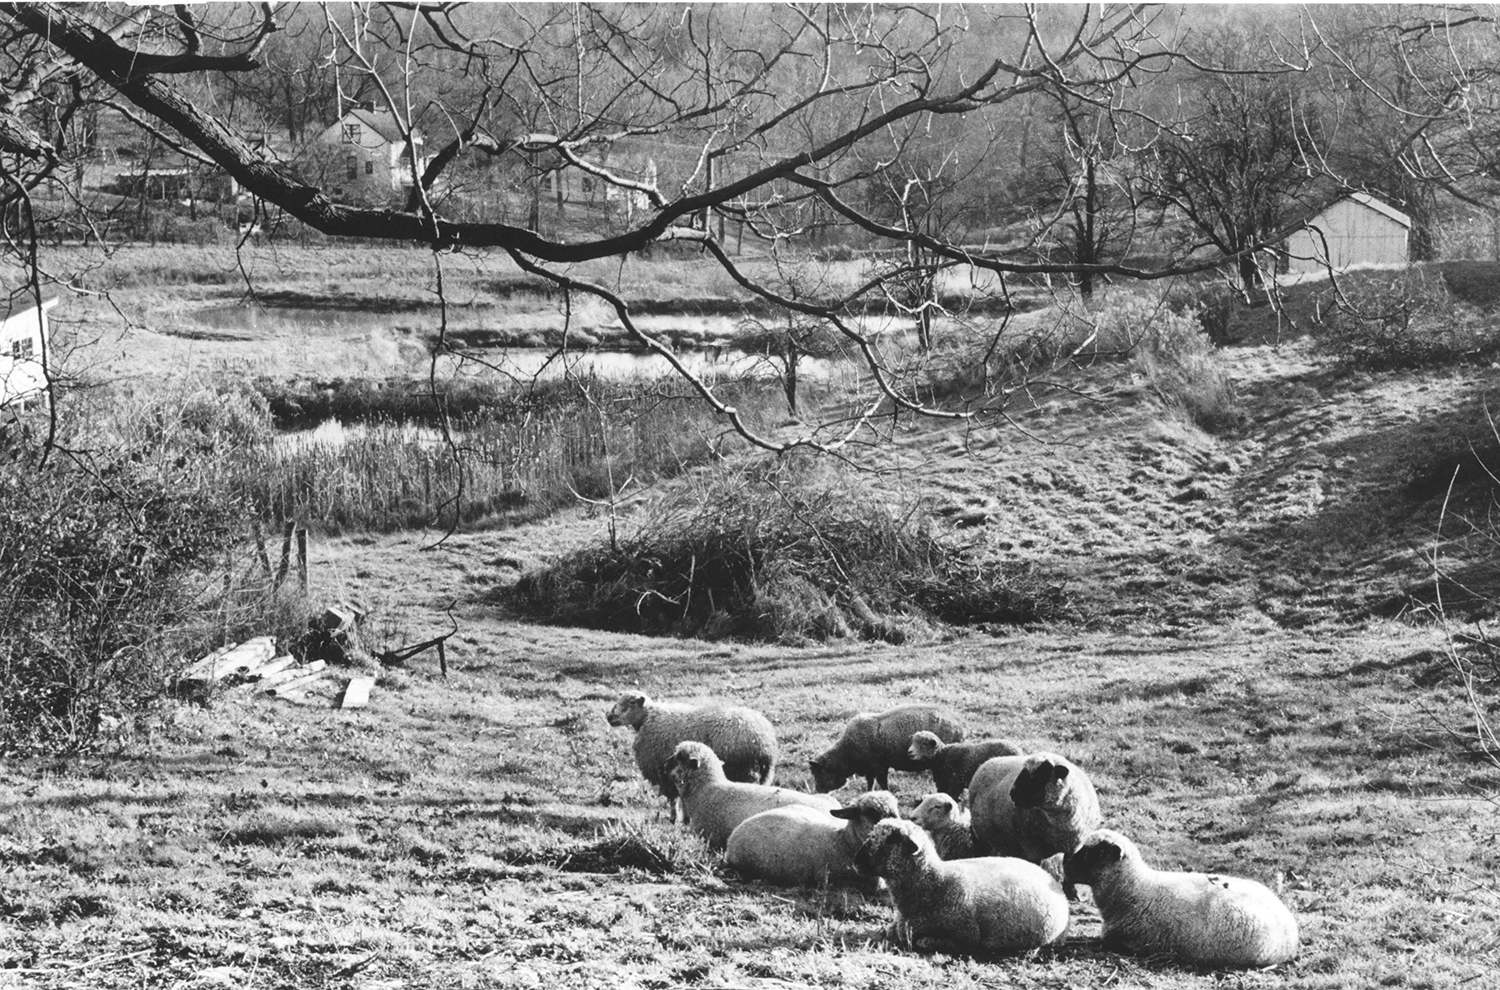 Sheep_1977.jpg